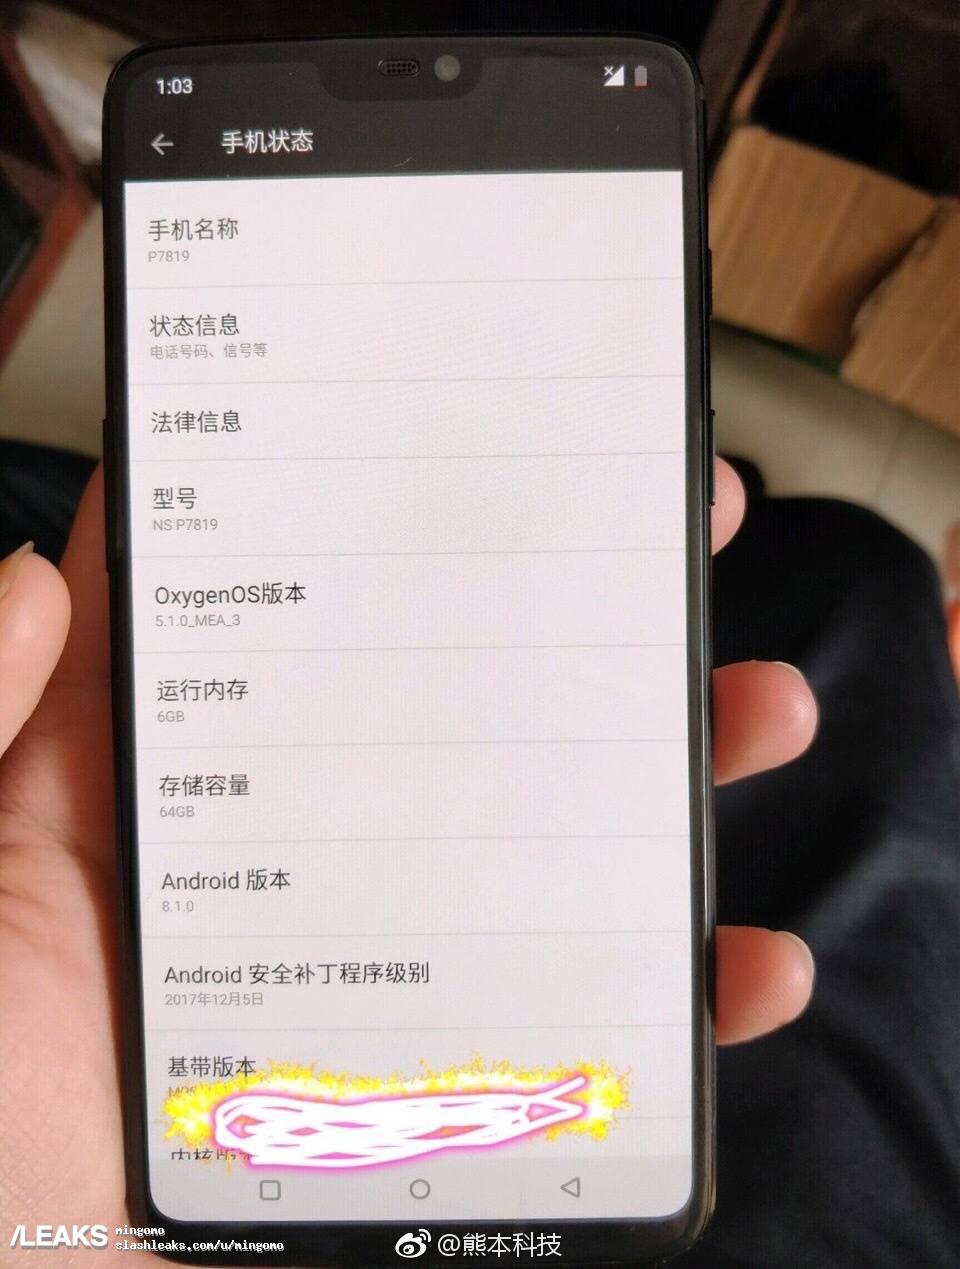 OnePlus 6-bilder kopierade iPhone X